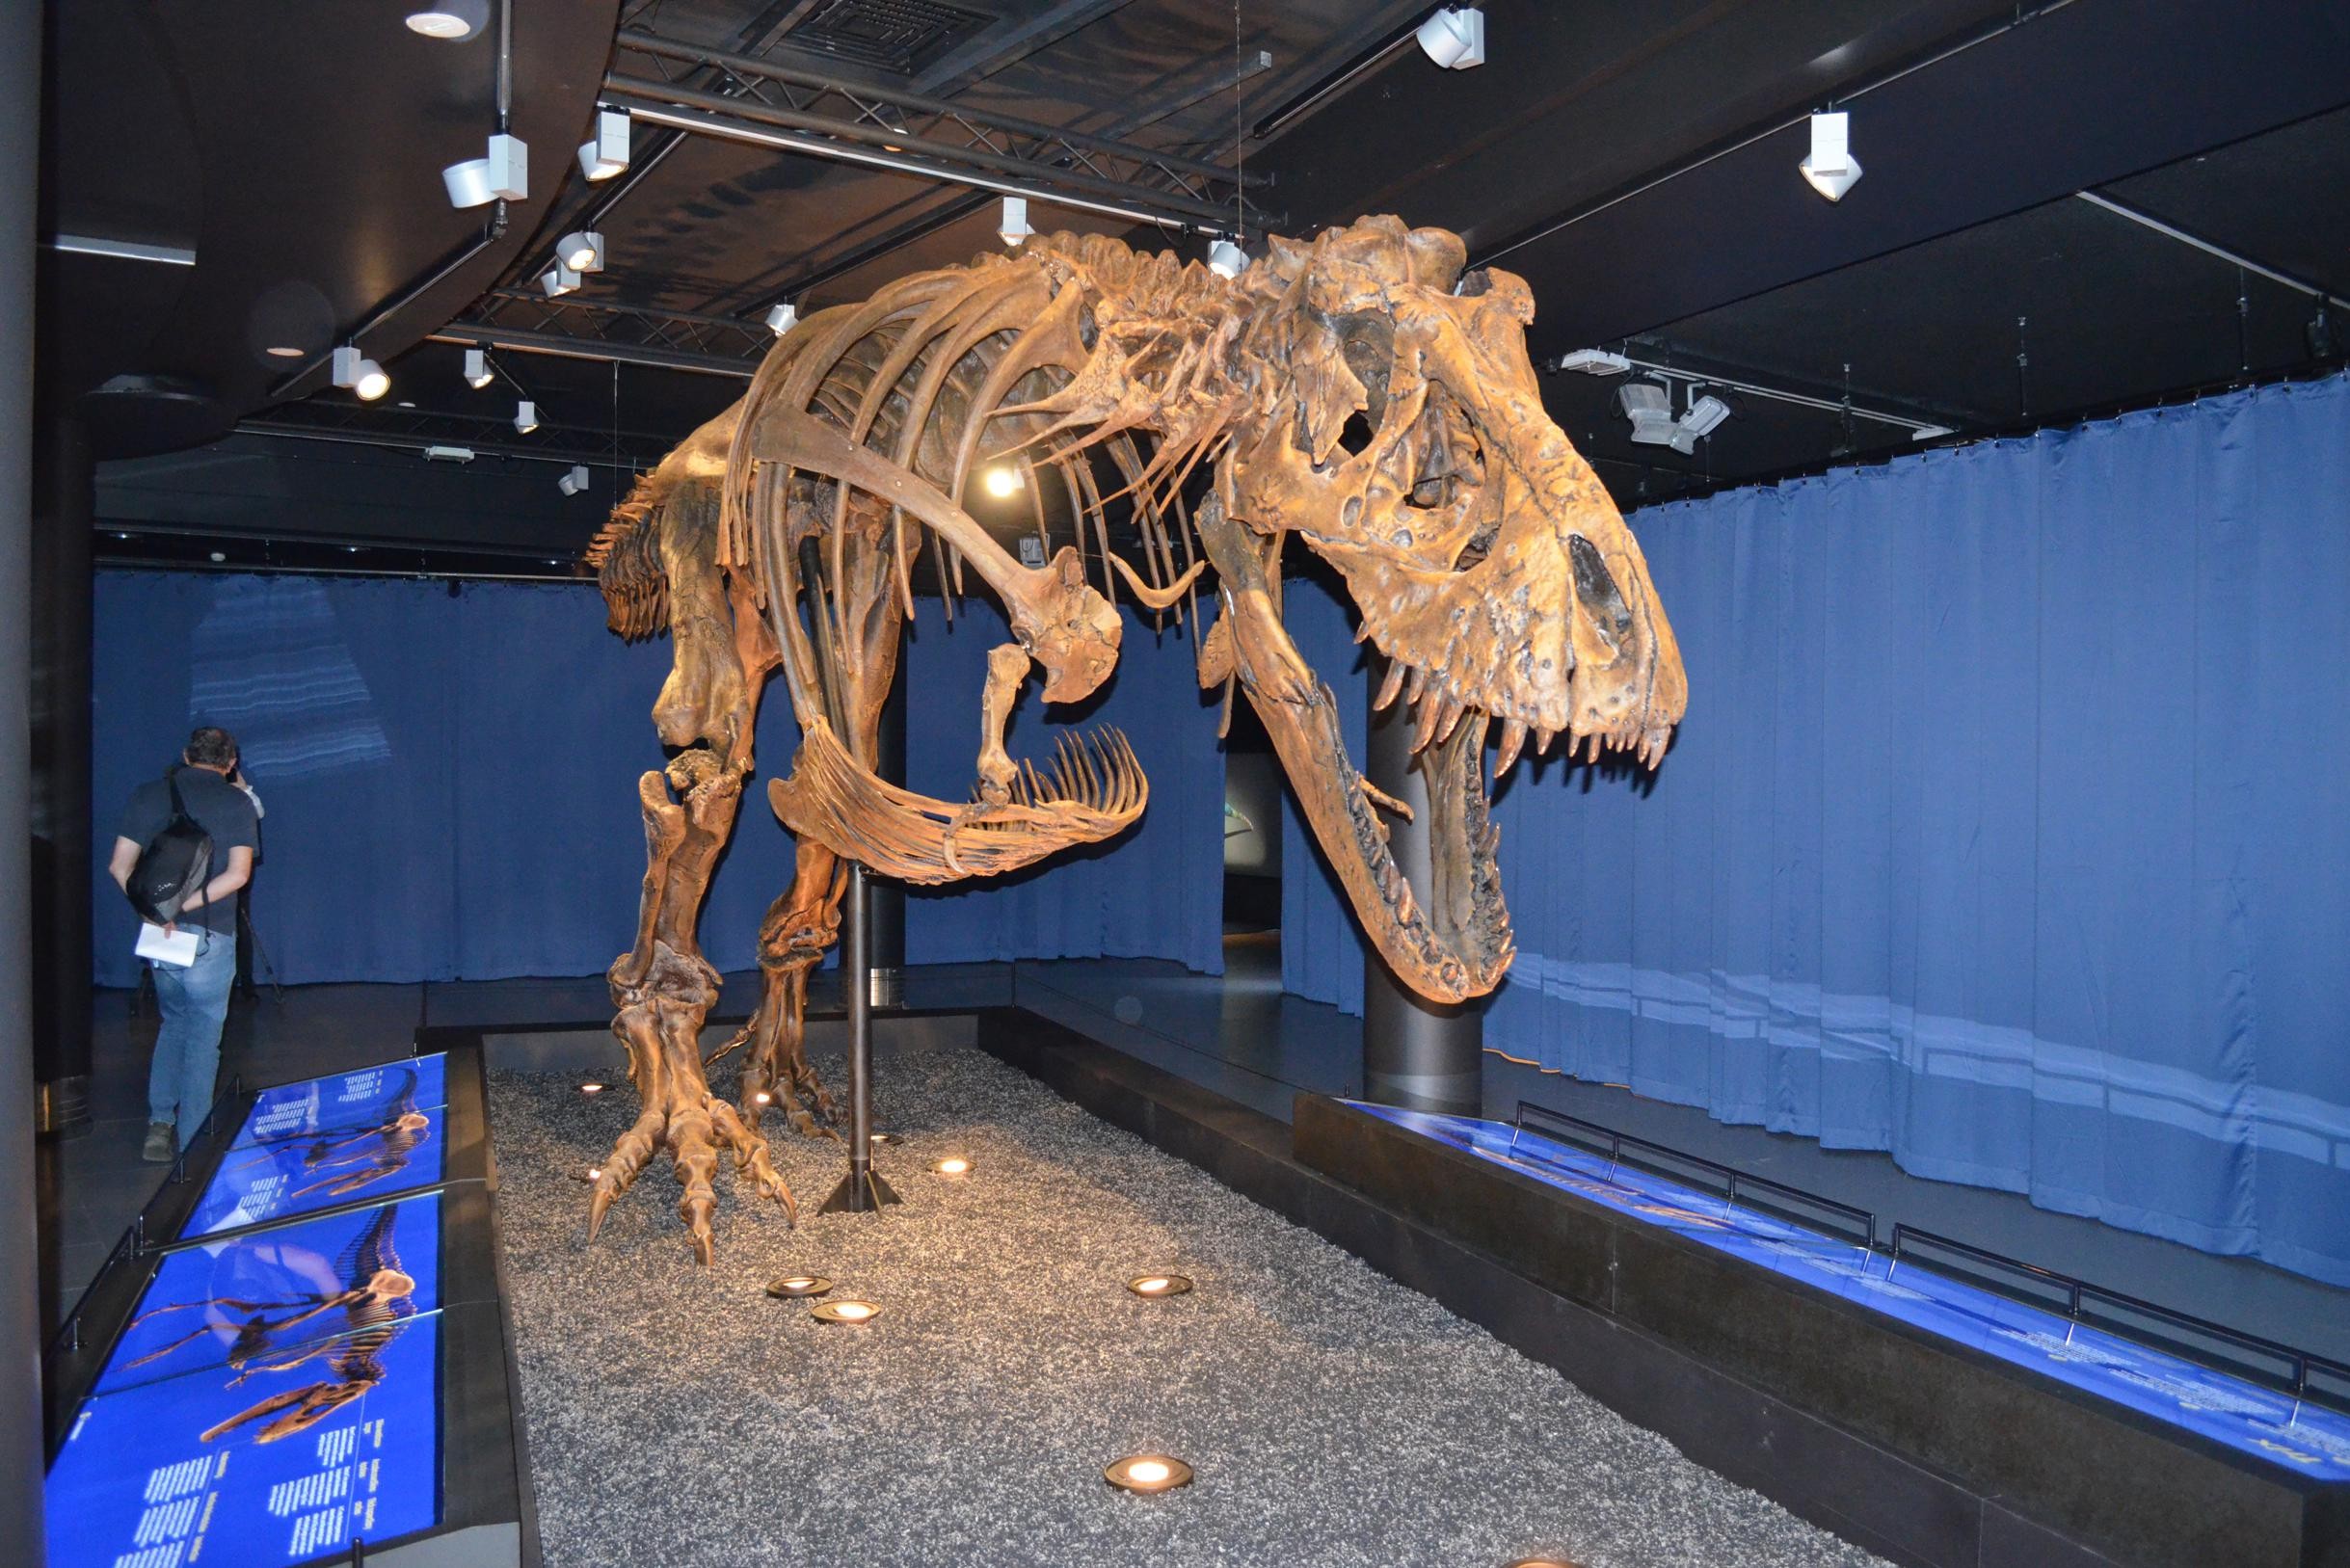 Uitdaging Derde Startpunt Bekendste dinosaurus is nu te bewonderen in Museum voor  Natuurwetenschappen: “Trix haar skelet vertoont zelfs bijtsporen” (Elsene)  | Het Nieuwsblad Mobile